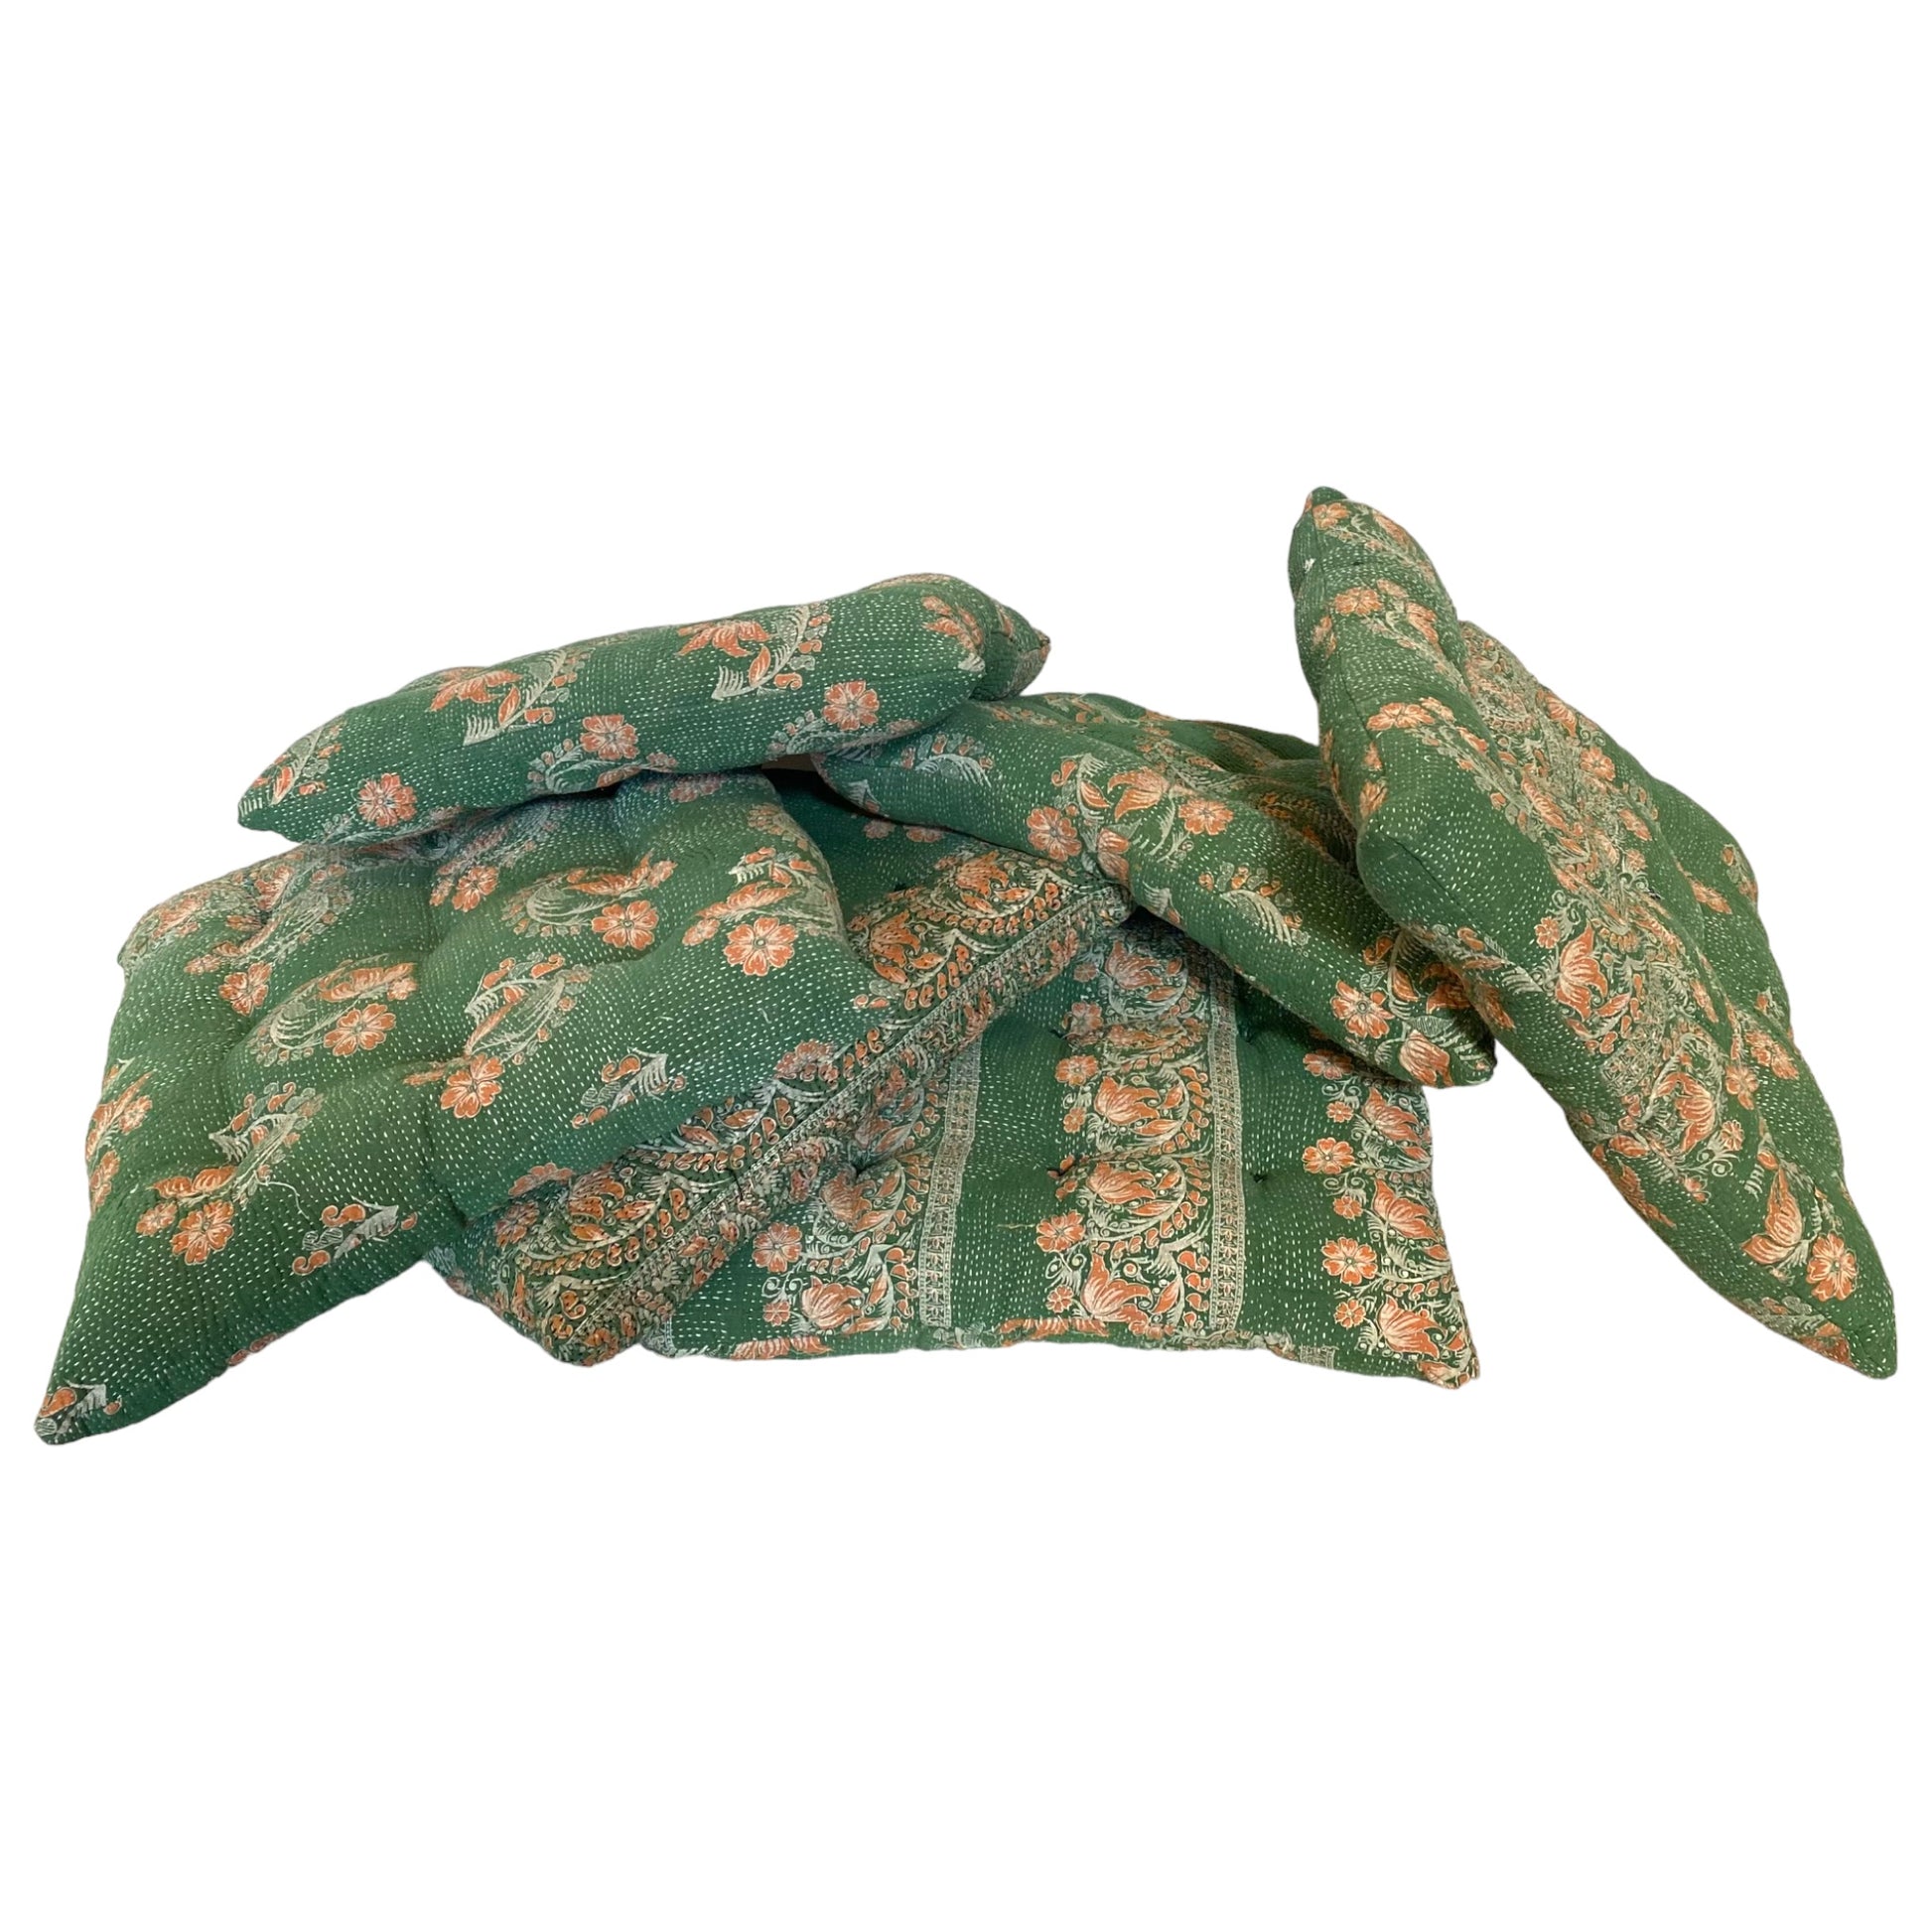 Green floral Kantha seat pads